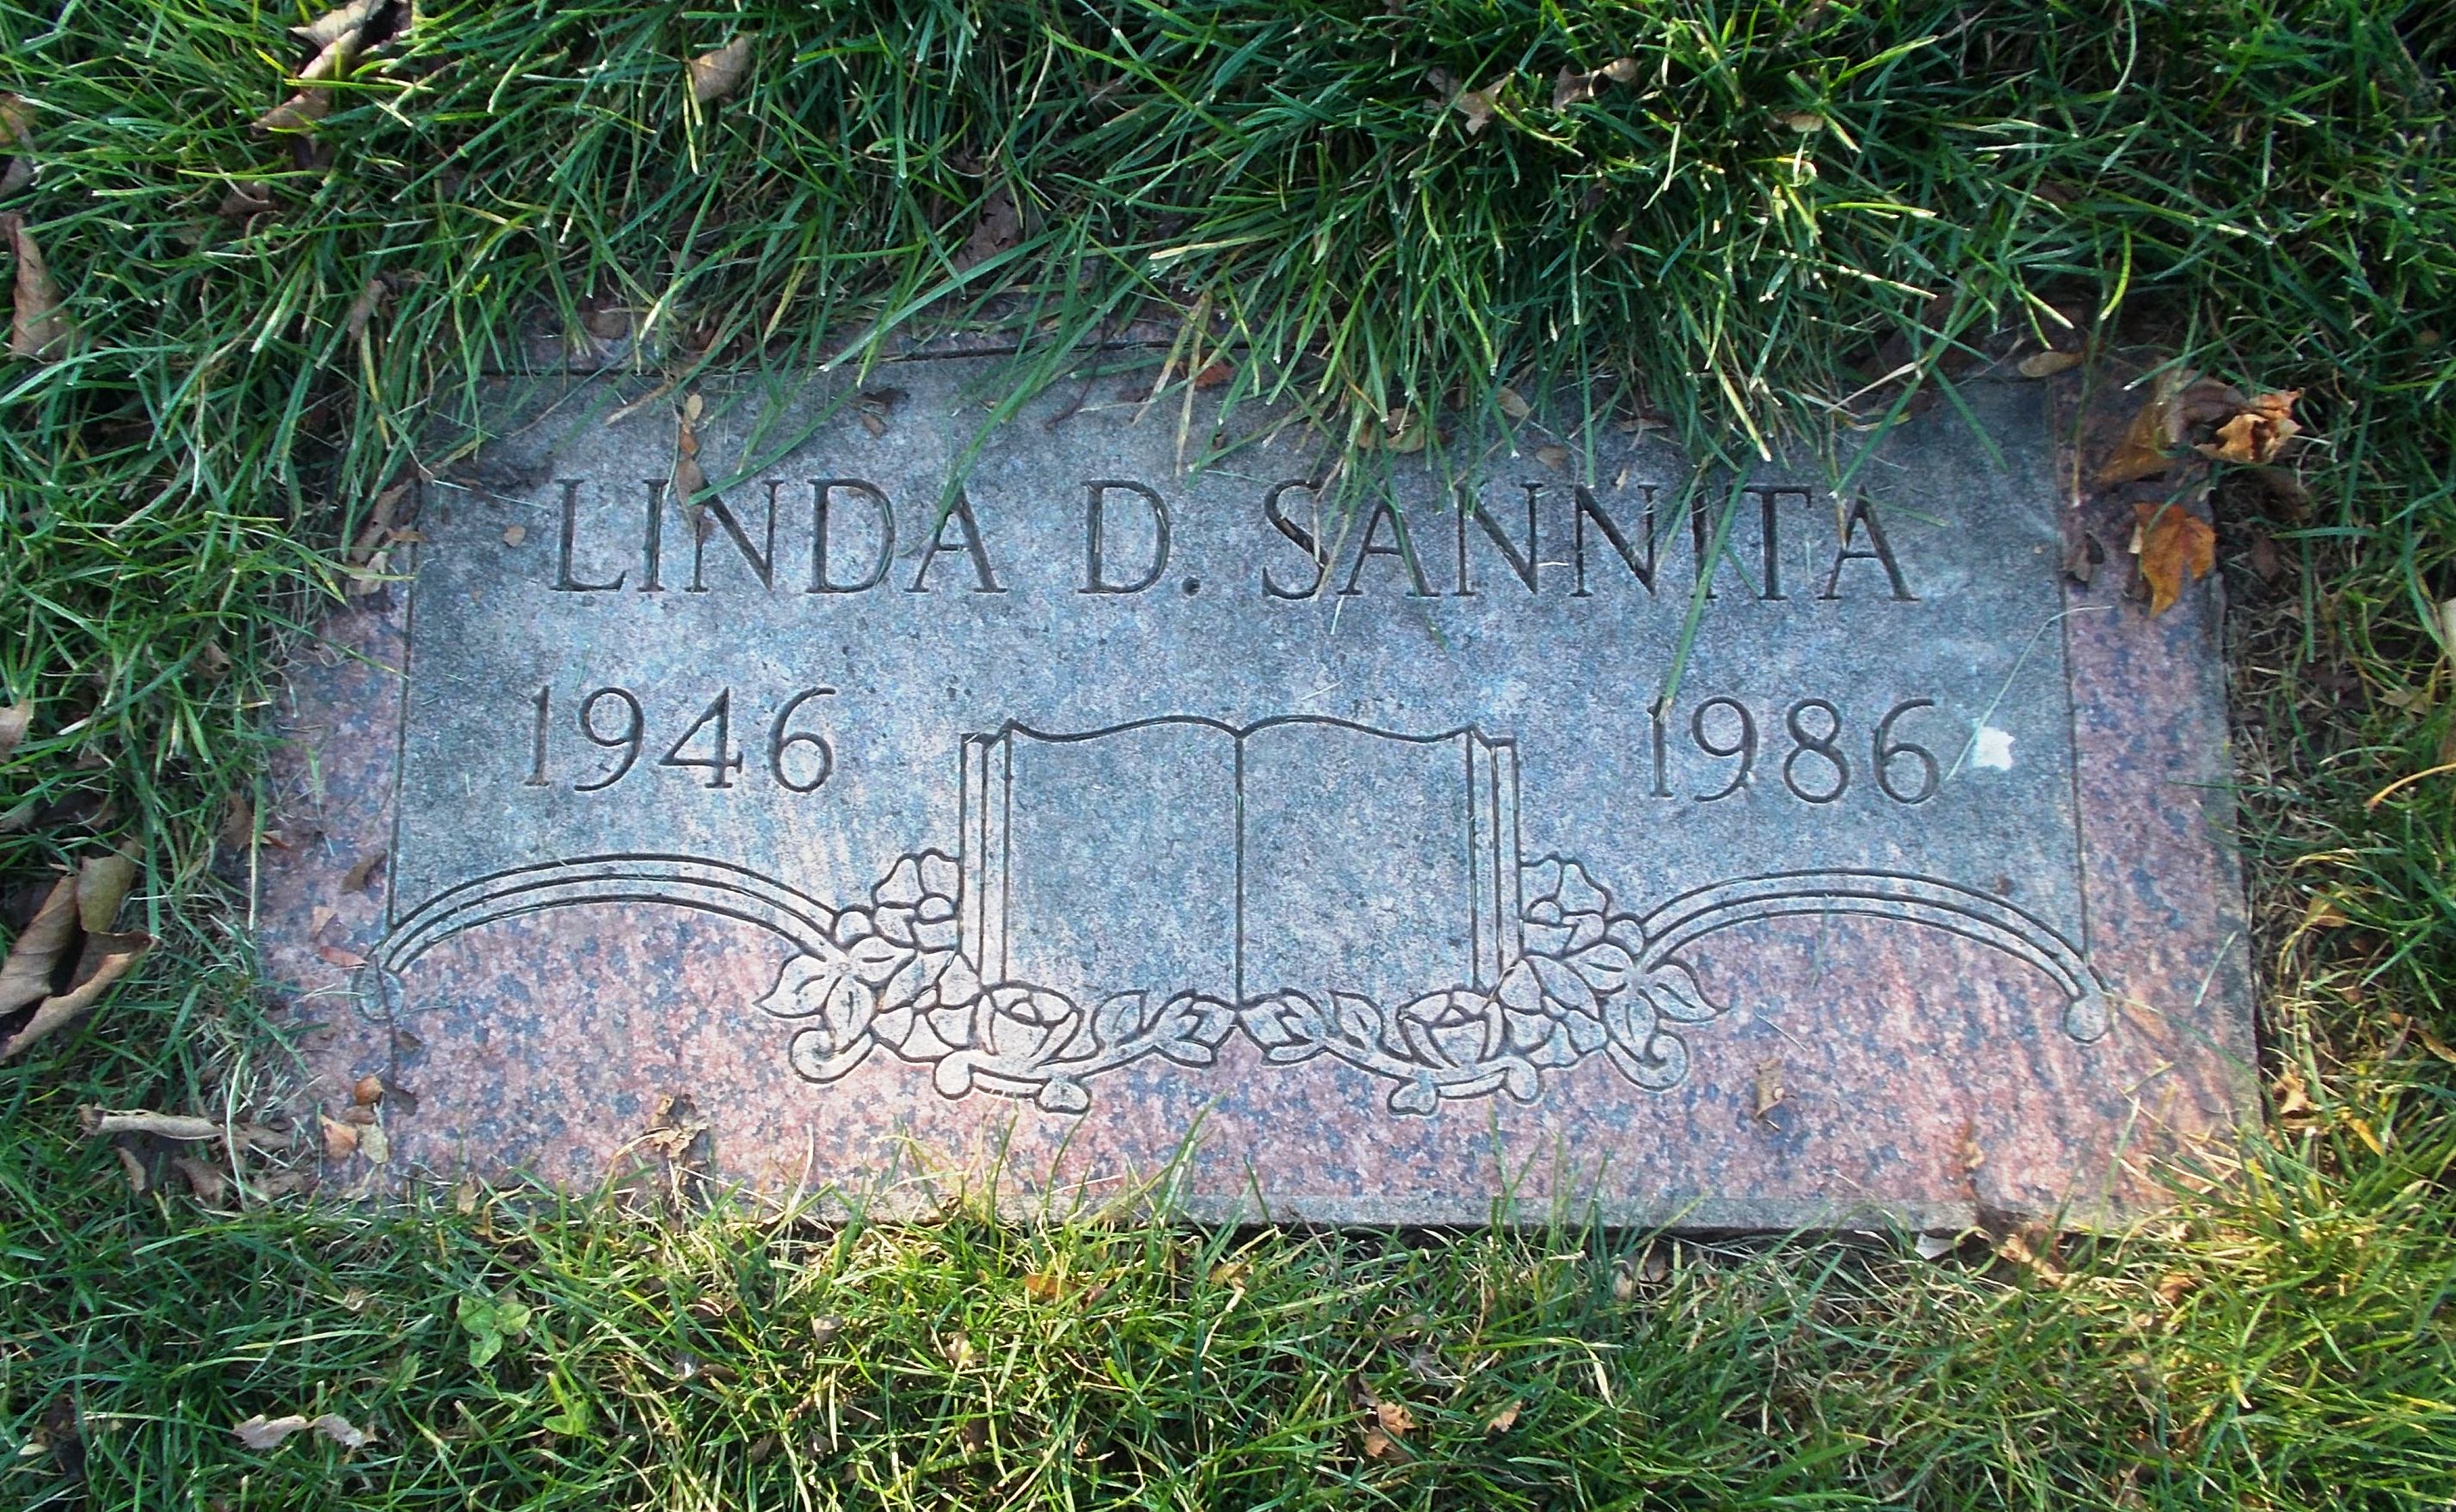 Linda D Sannita